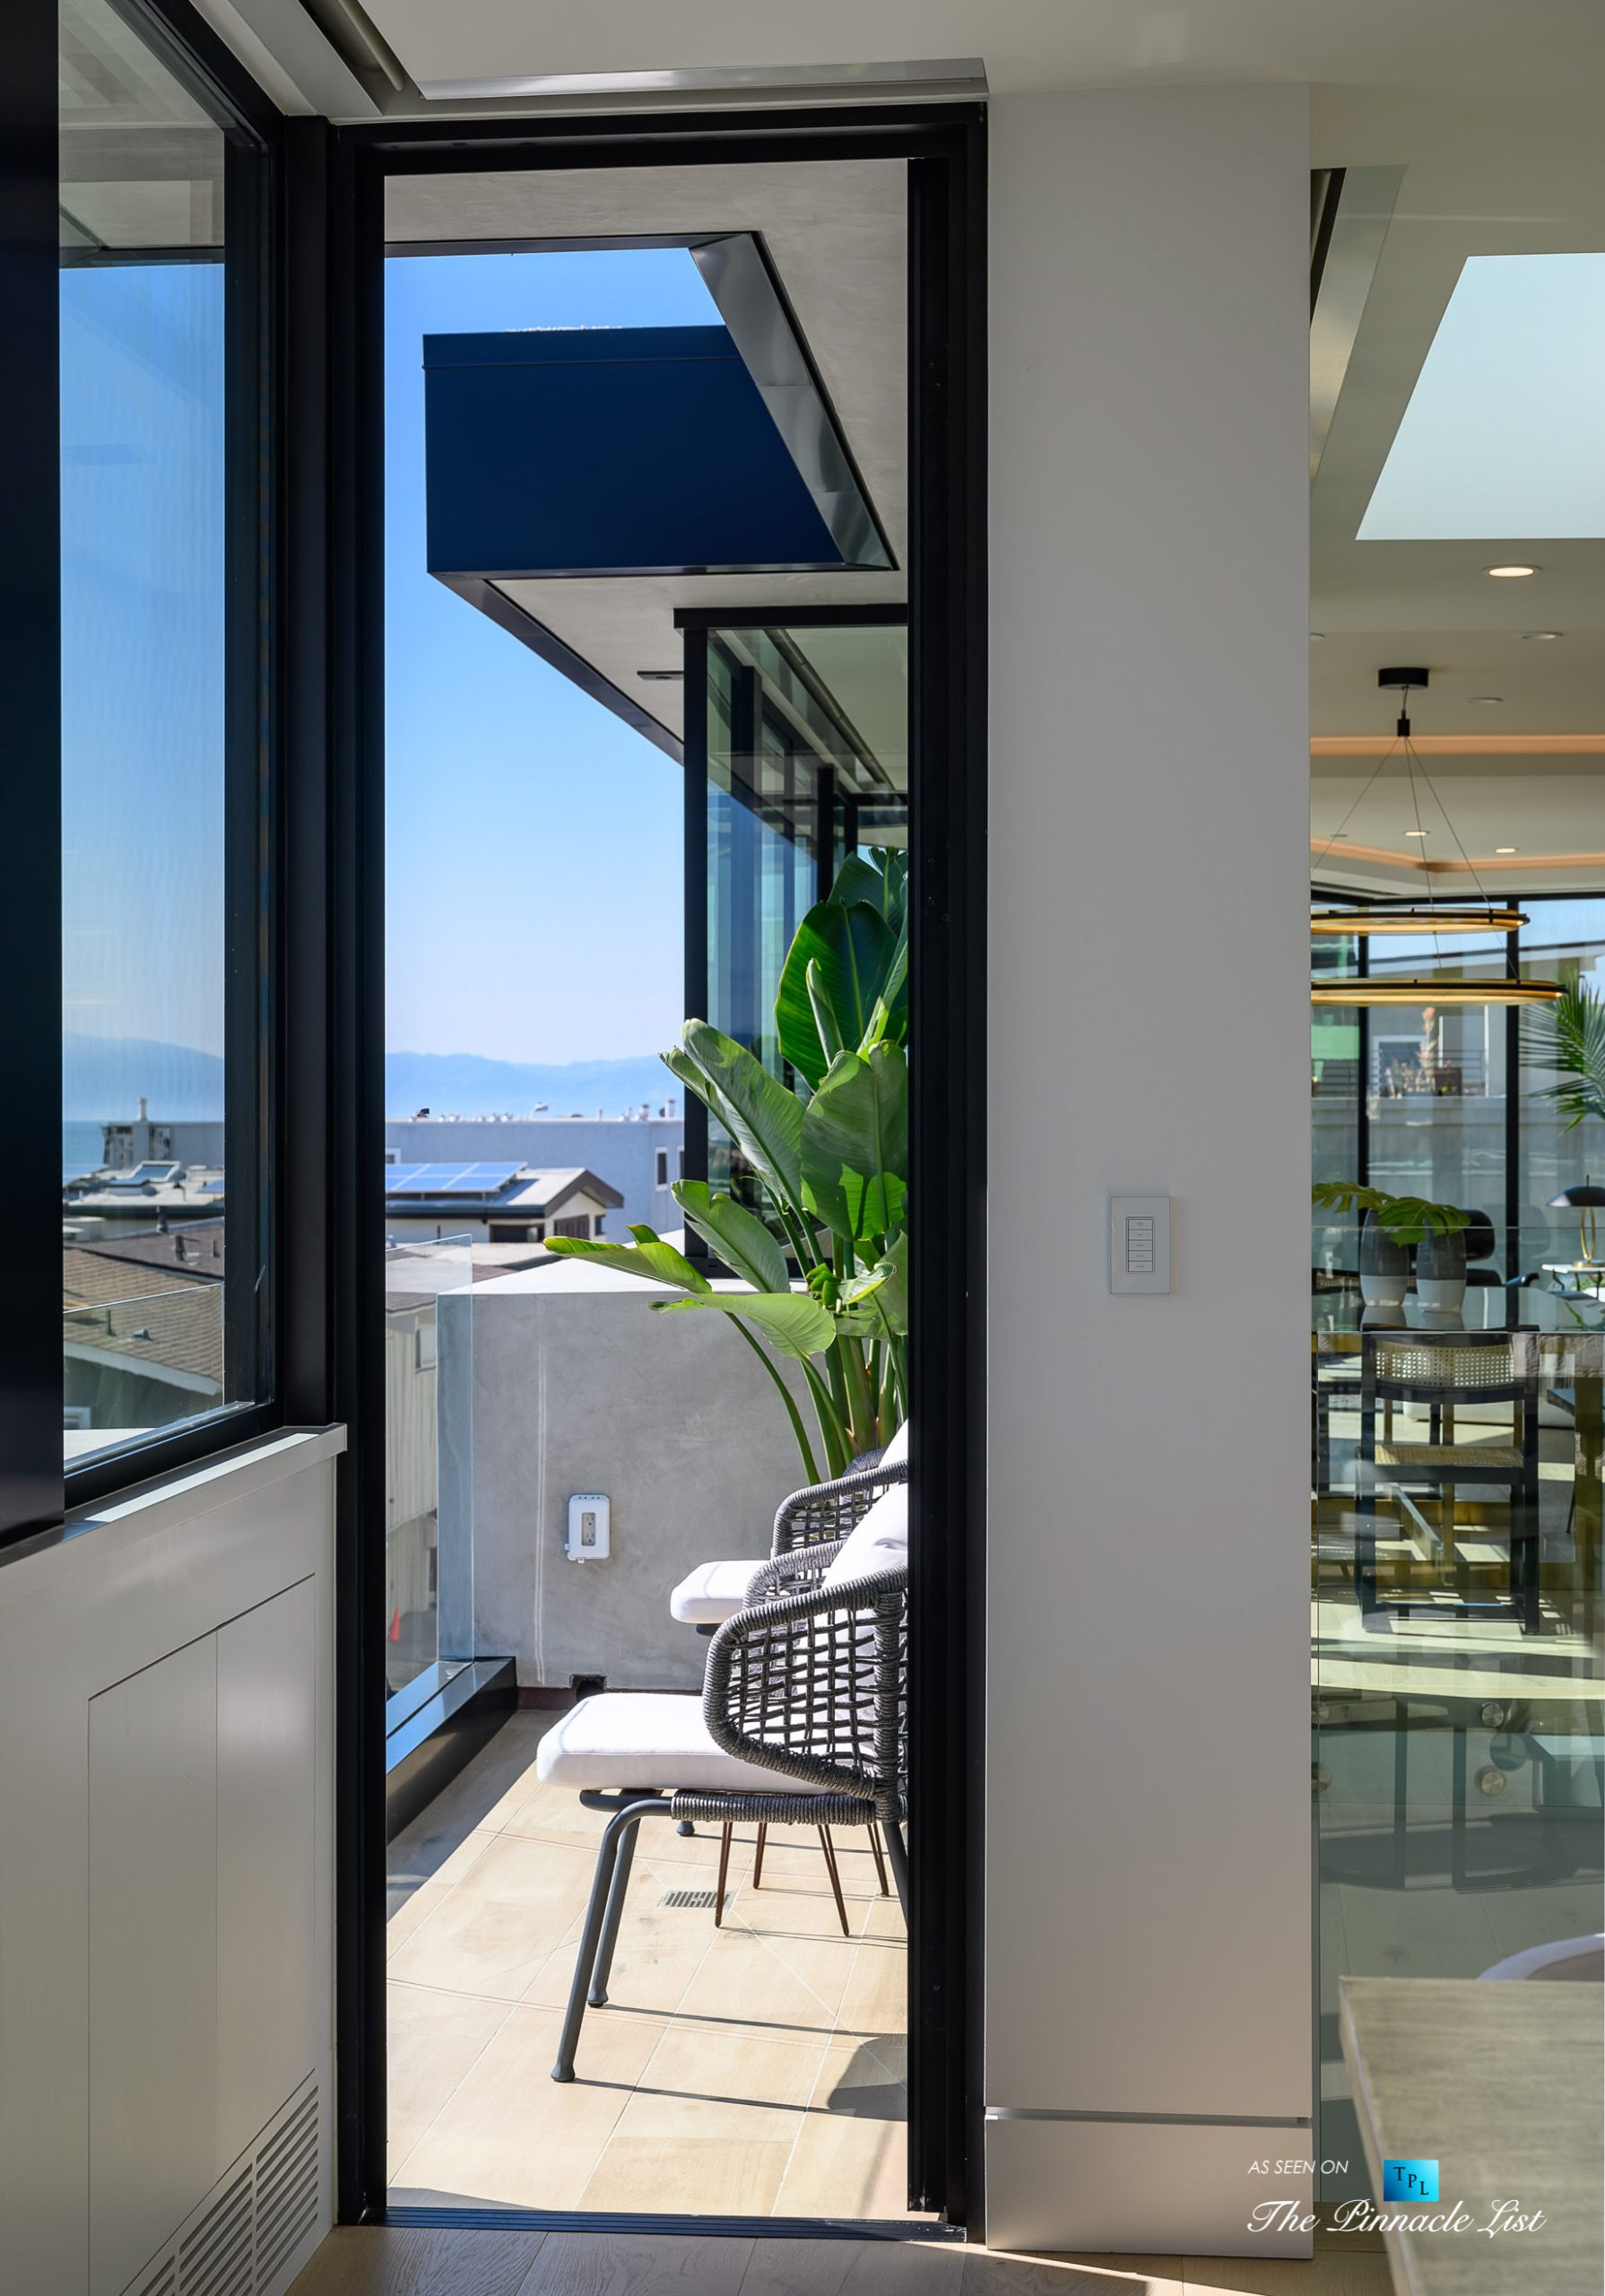 2016 Ocean Dr, Manhattan Beach, CA, USA – Private Deck – Luxury Real Estate – Modern Ocean View Home